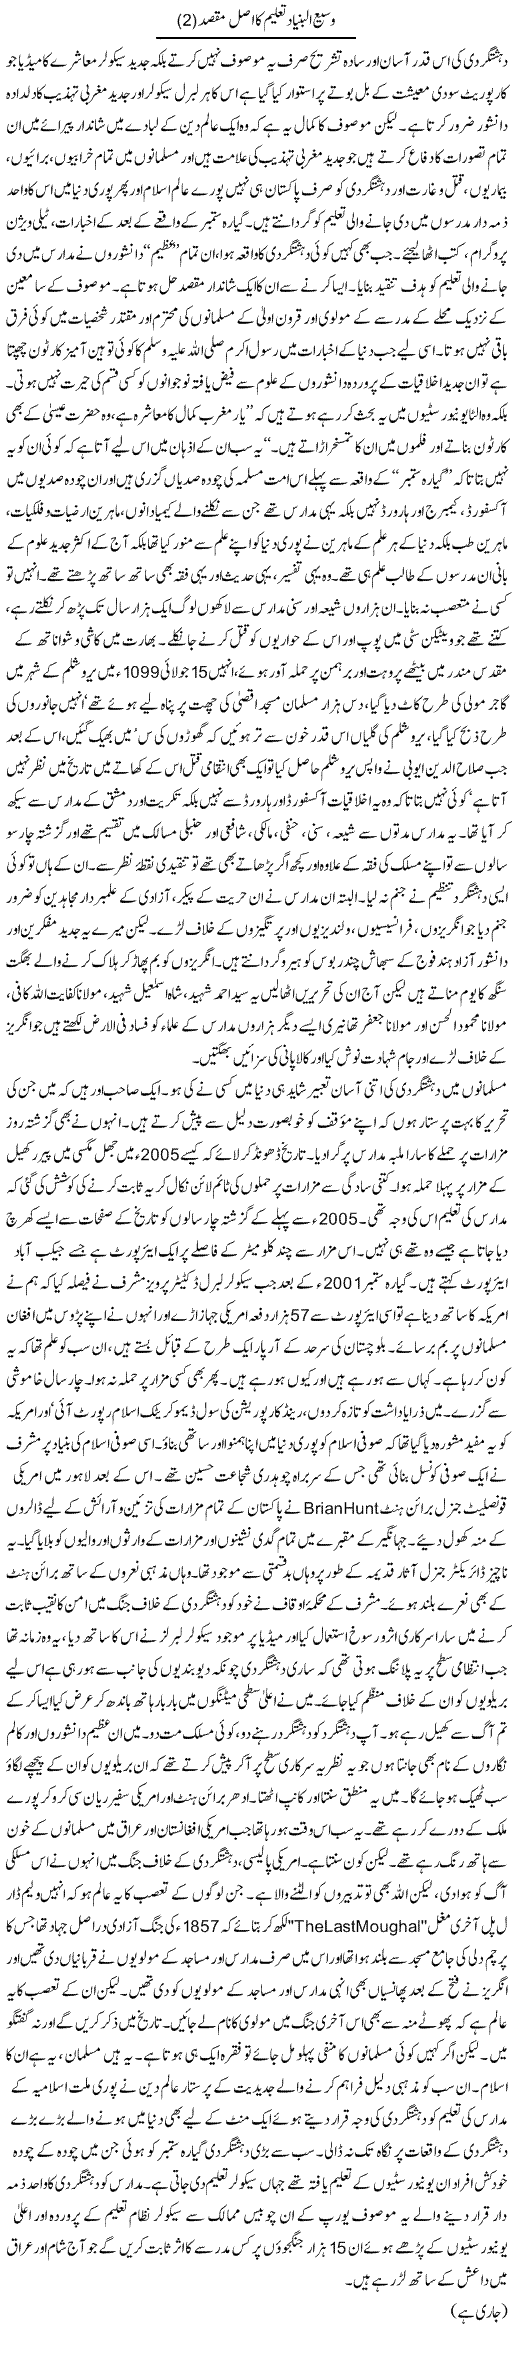 Wasee Albunyad Taleem Ka Asal Maqsad (2) | Orya Maqbool Jan | Daily Urdu Columns